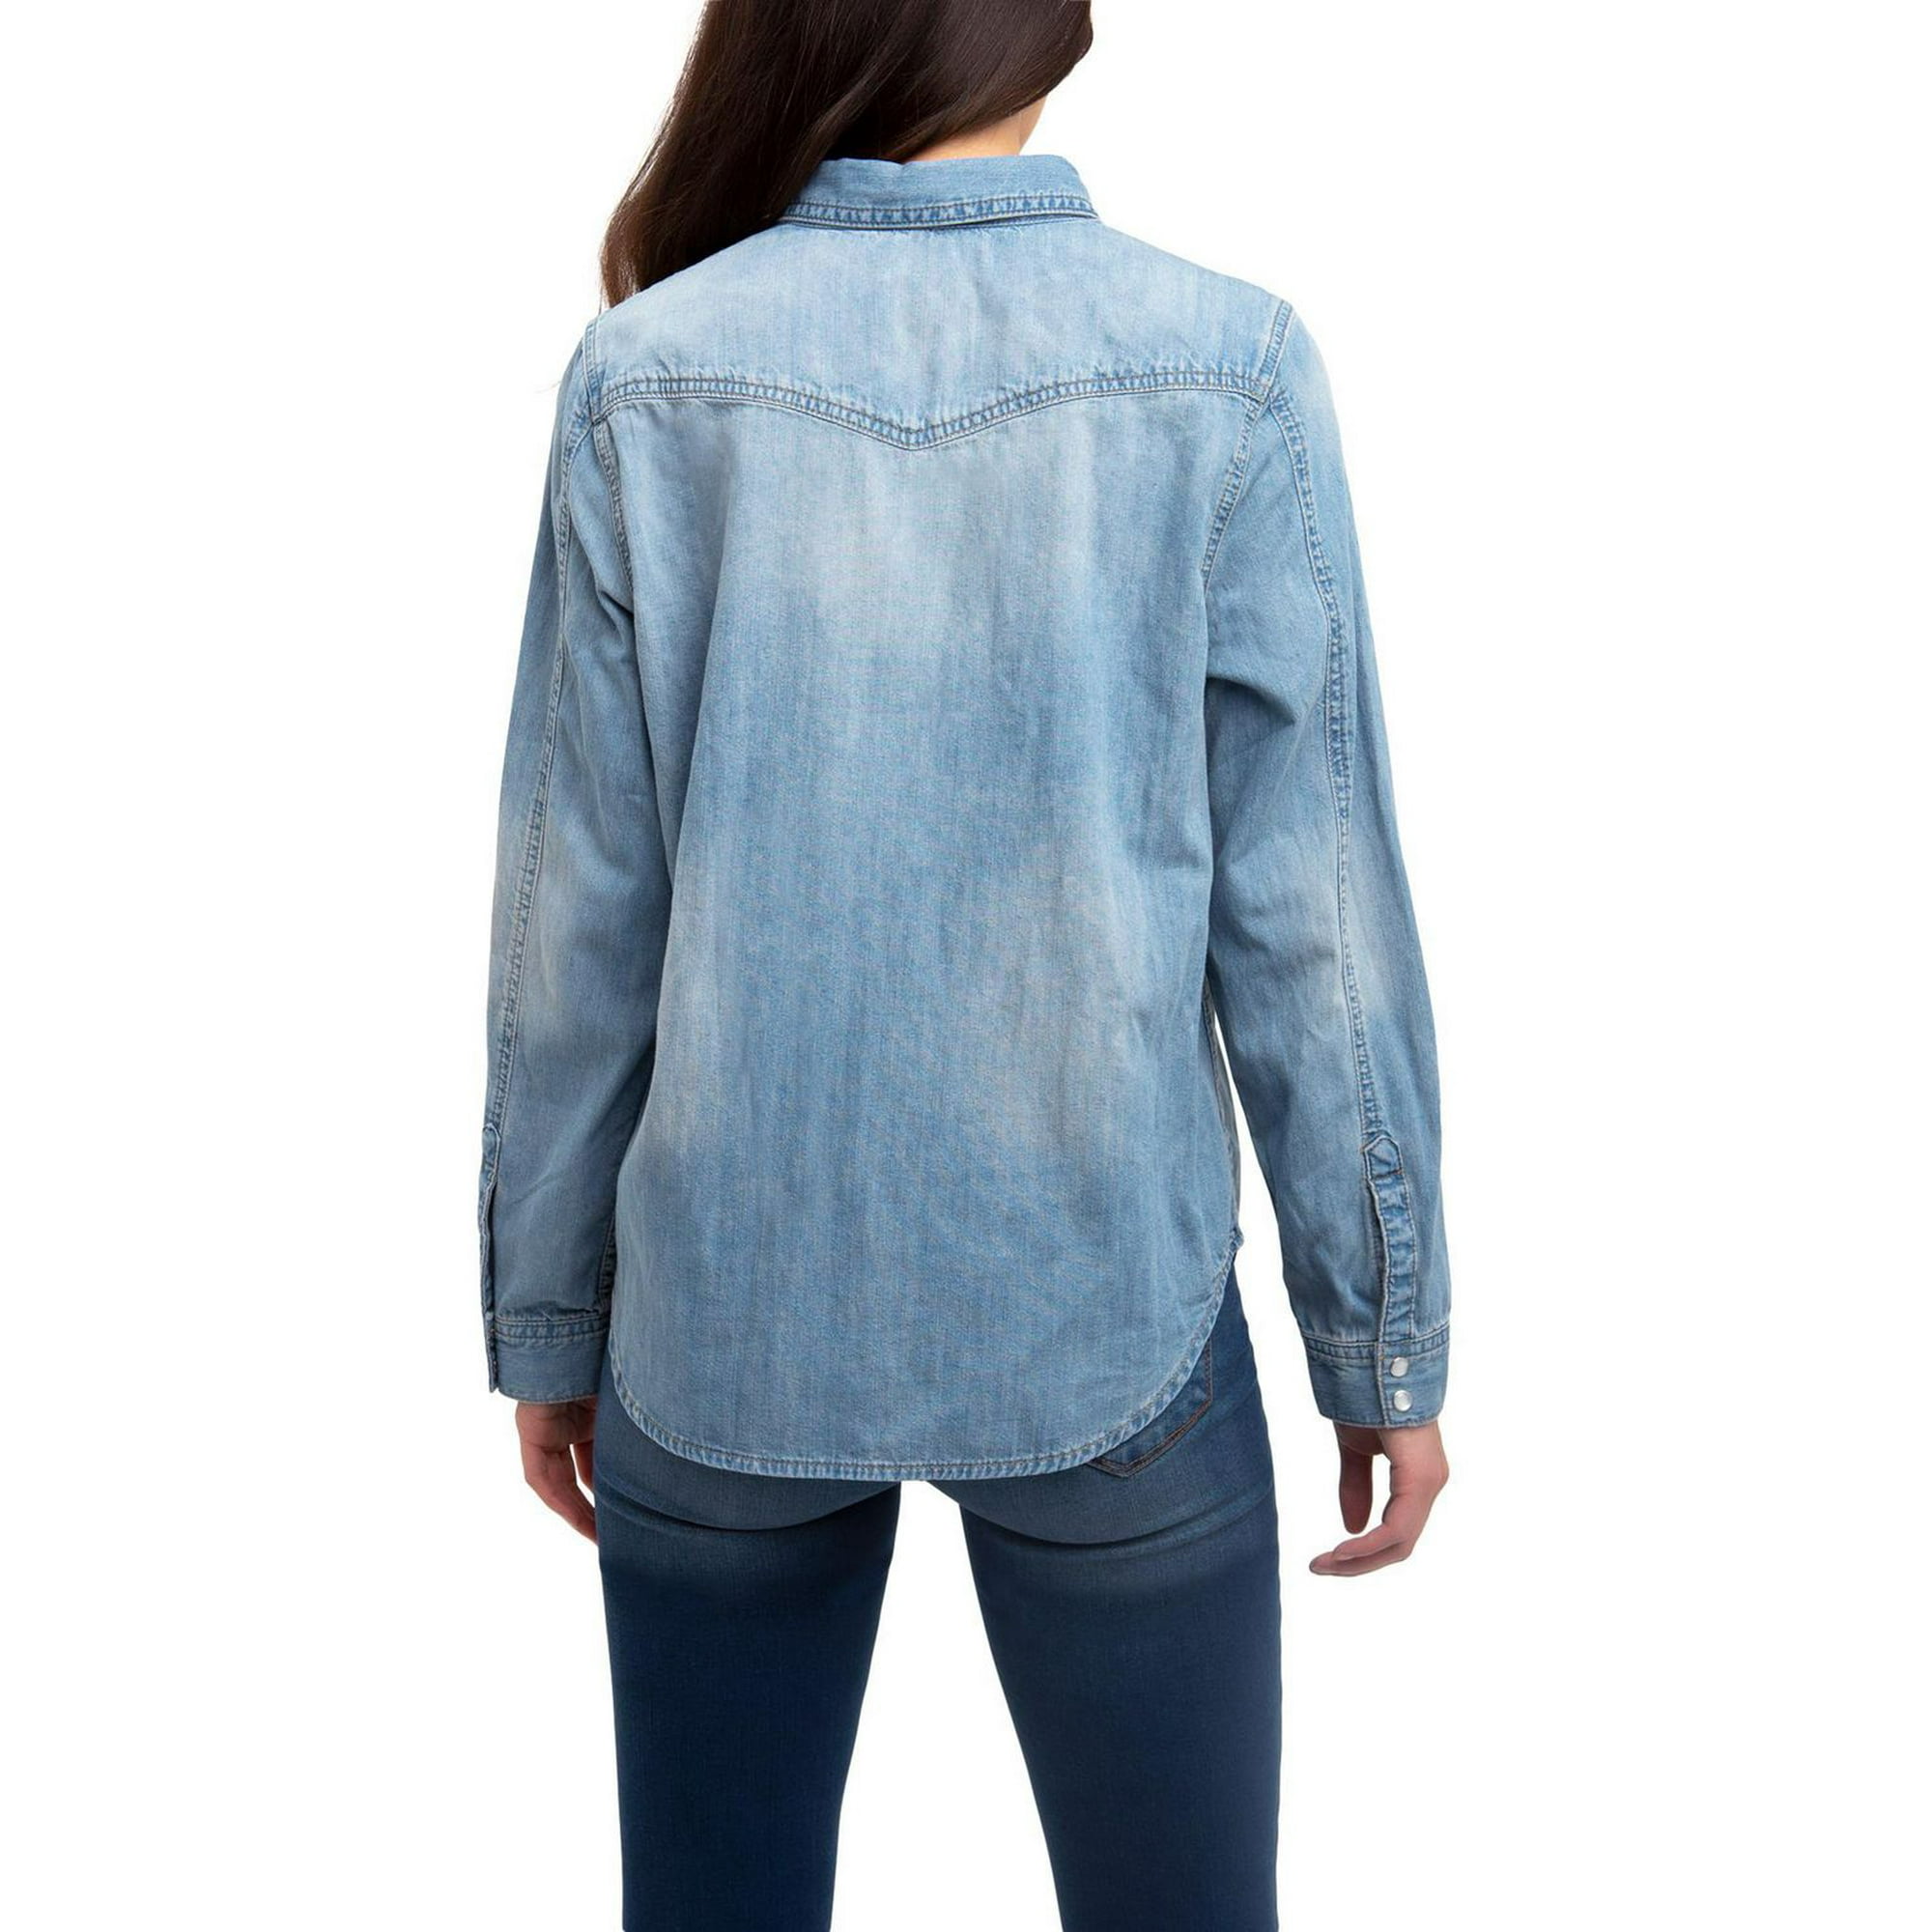 Brand New Lady's Genuine Jordache Denim Blue Jeans Size 11/12